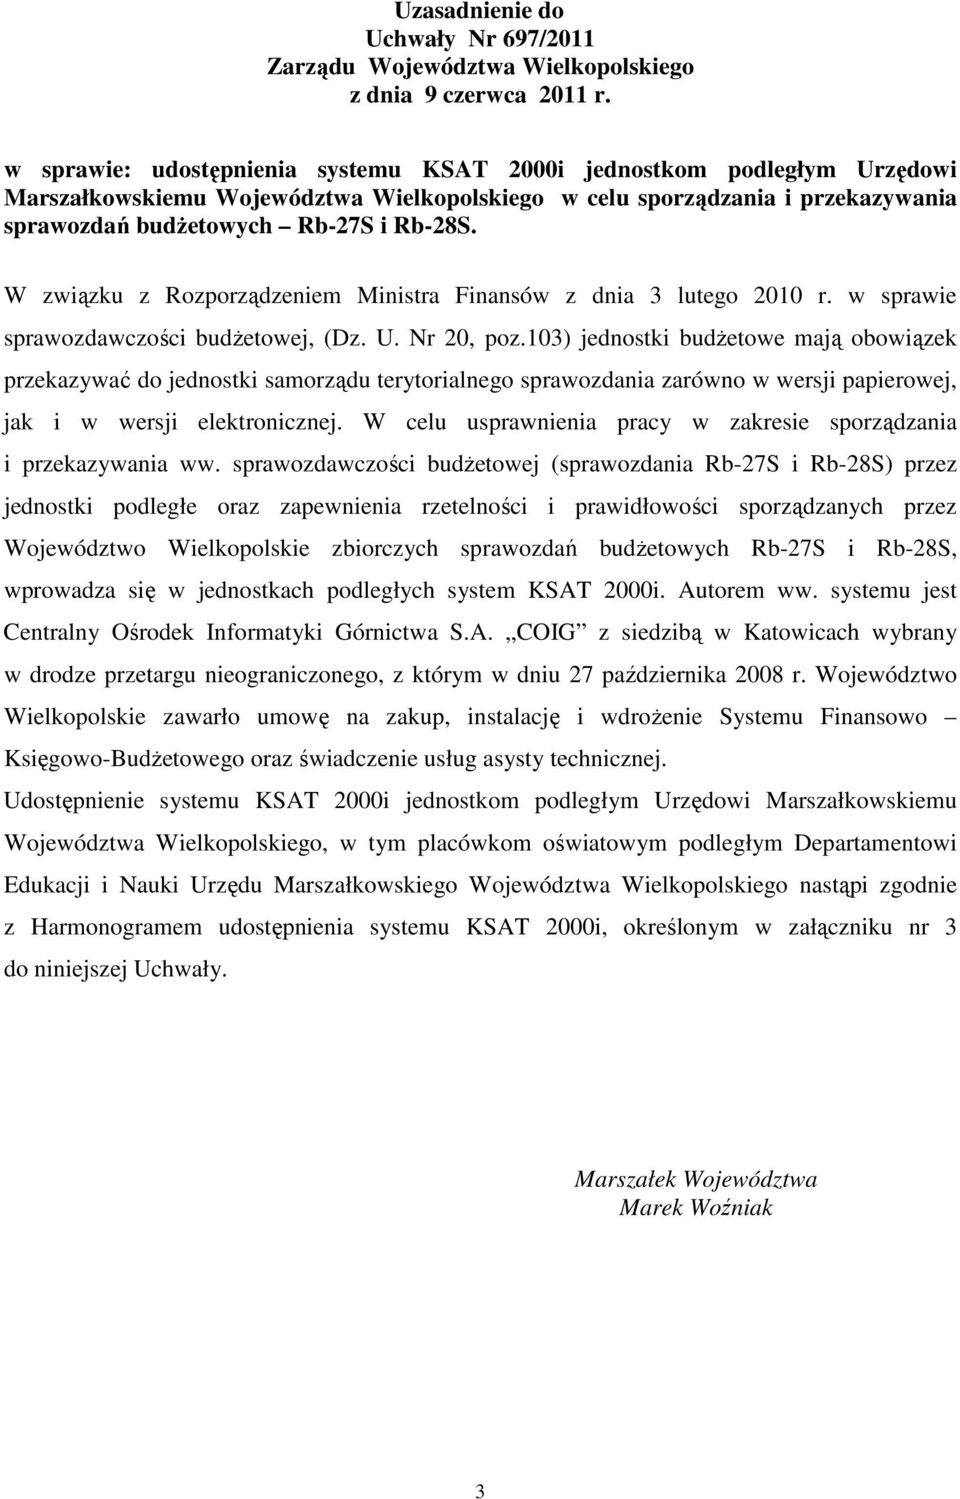 W związku z Rozporządzeniem Ministra Finansów z dnia 3 lutego 2010 r. w sprawie sprawozdawczości budŝetowej, (Dz. U. Nr 20, poz.